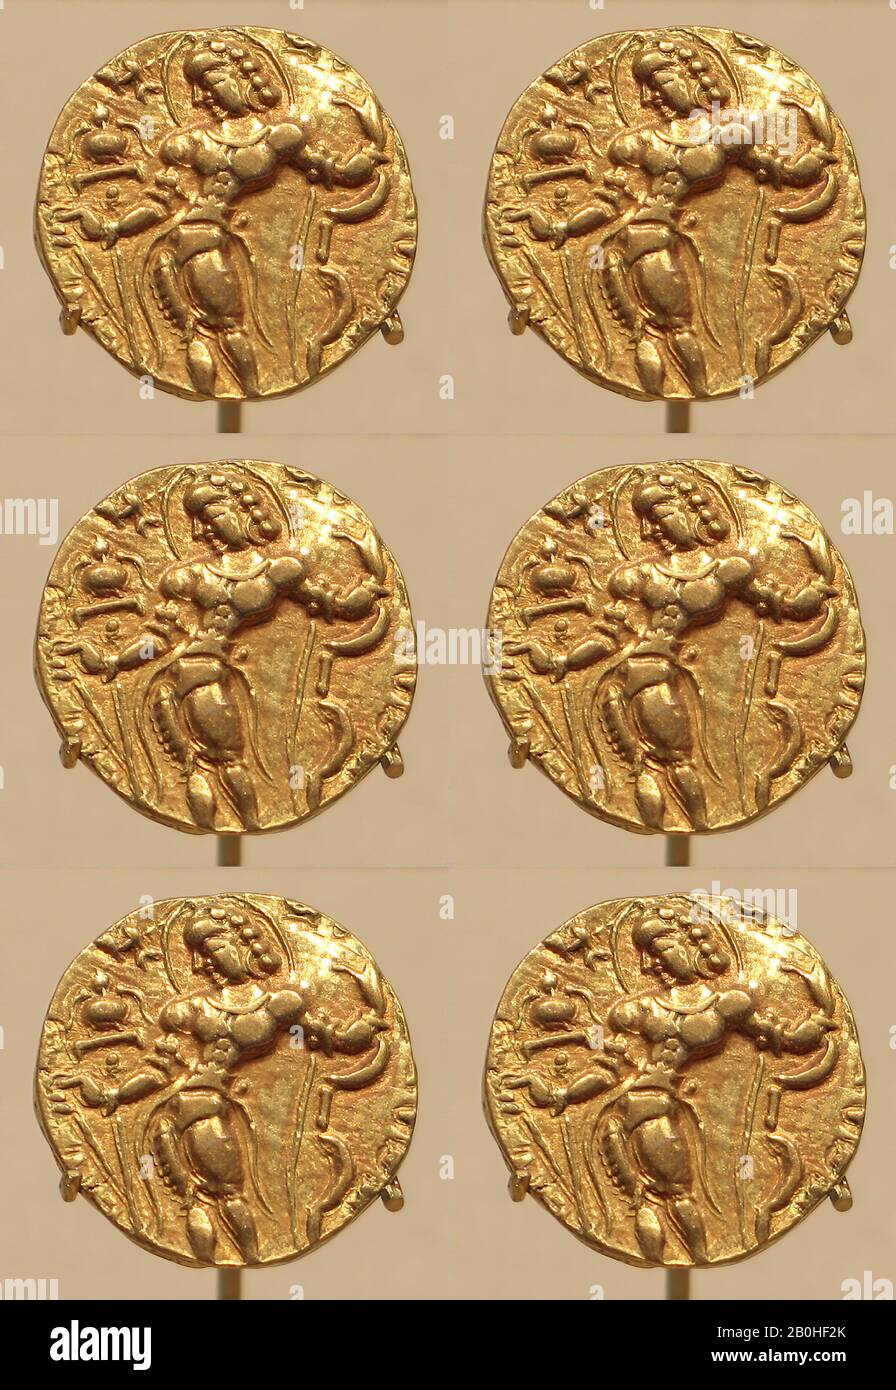 Moneta D'Oro Che Mostra Il Re Kumaragupta Come Archer, India, Periodo Di Gupta, Data 415–455, India, Oro, Diam. 3/4 poll. (1,9 cm), Metallo Foto Stock